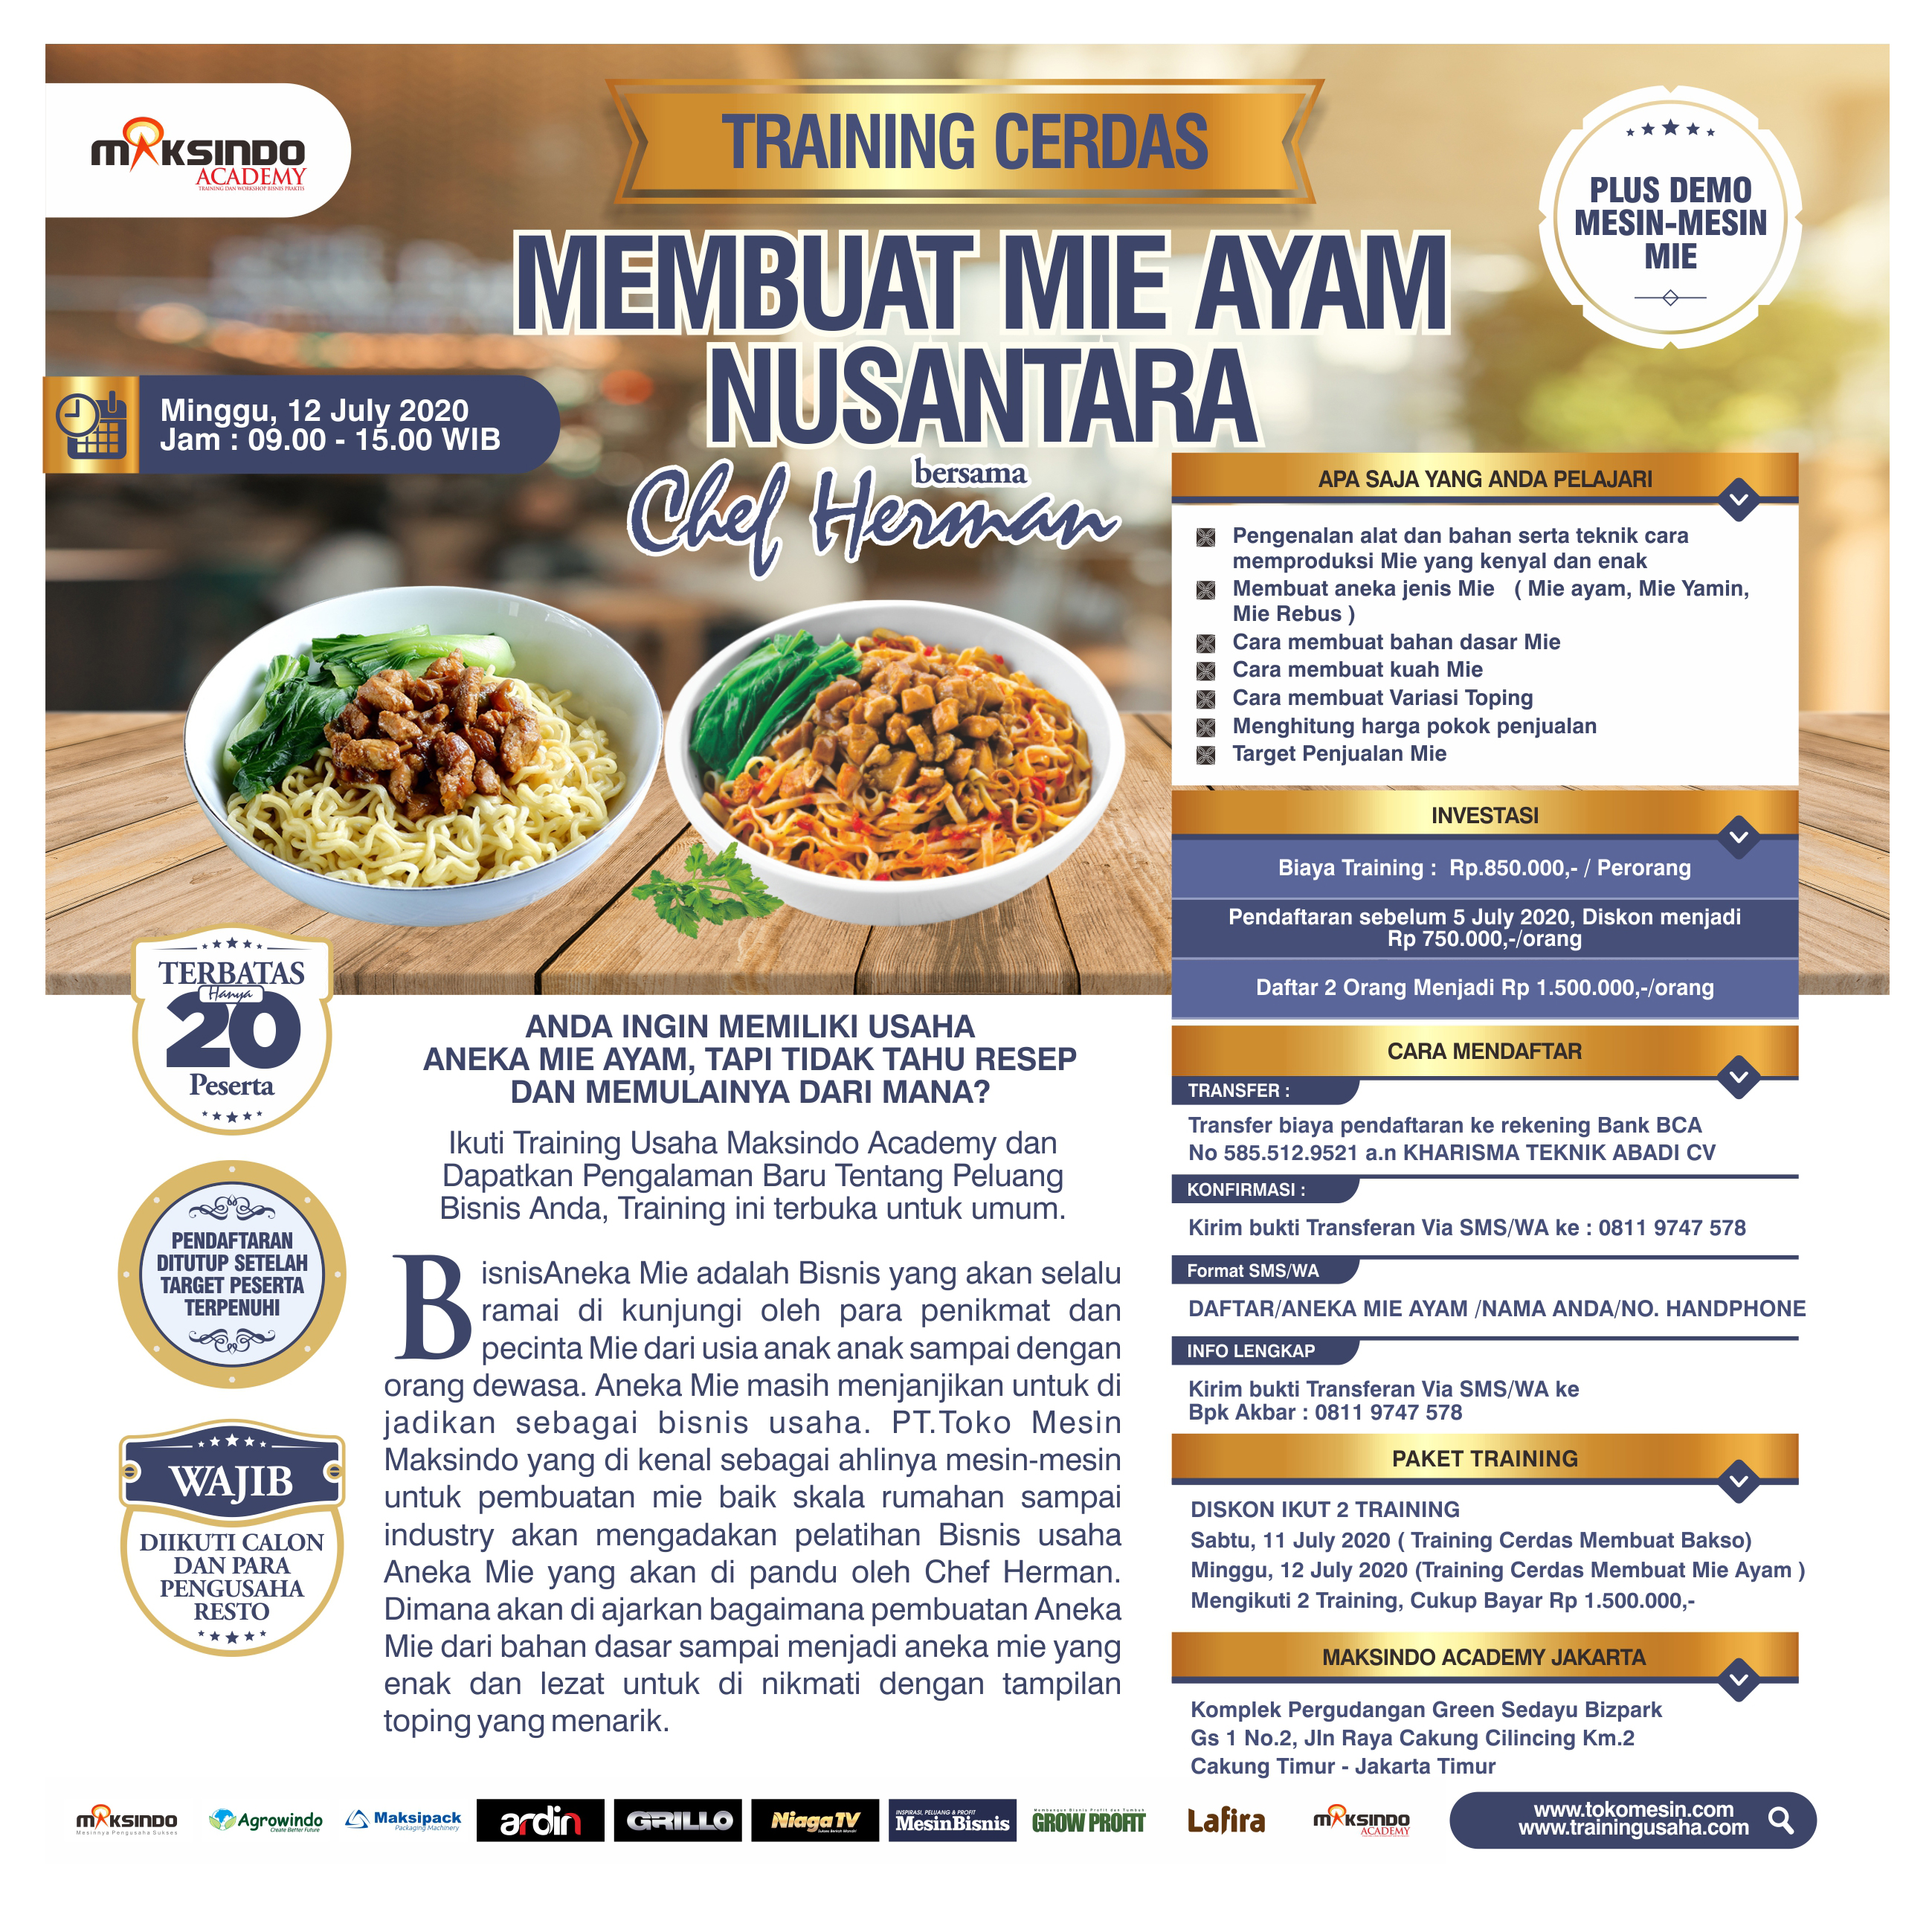 Training Cerdas Membuat Mie Ayam Nusantara, Minggu, 12 July 2020